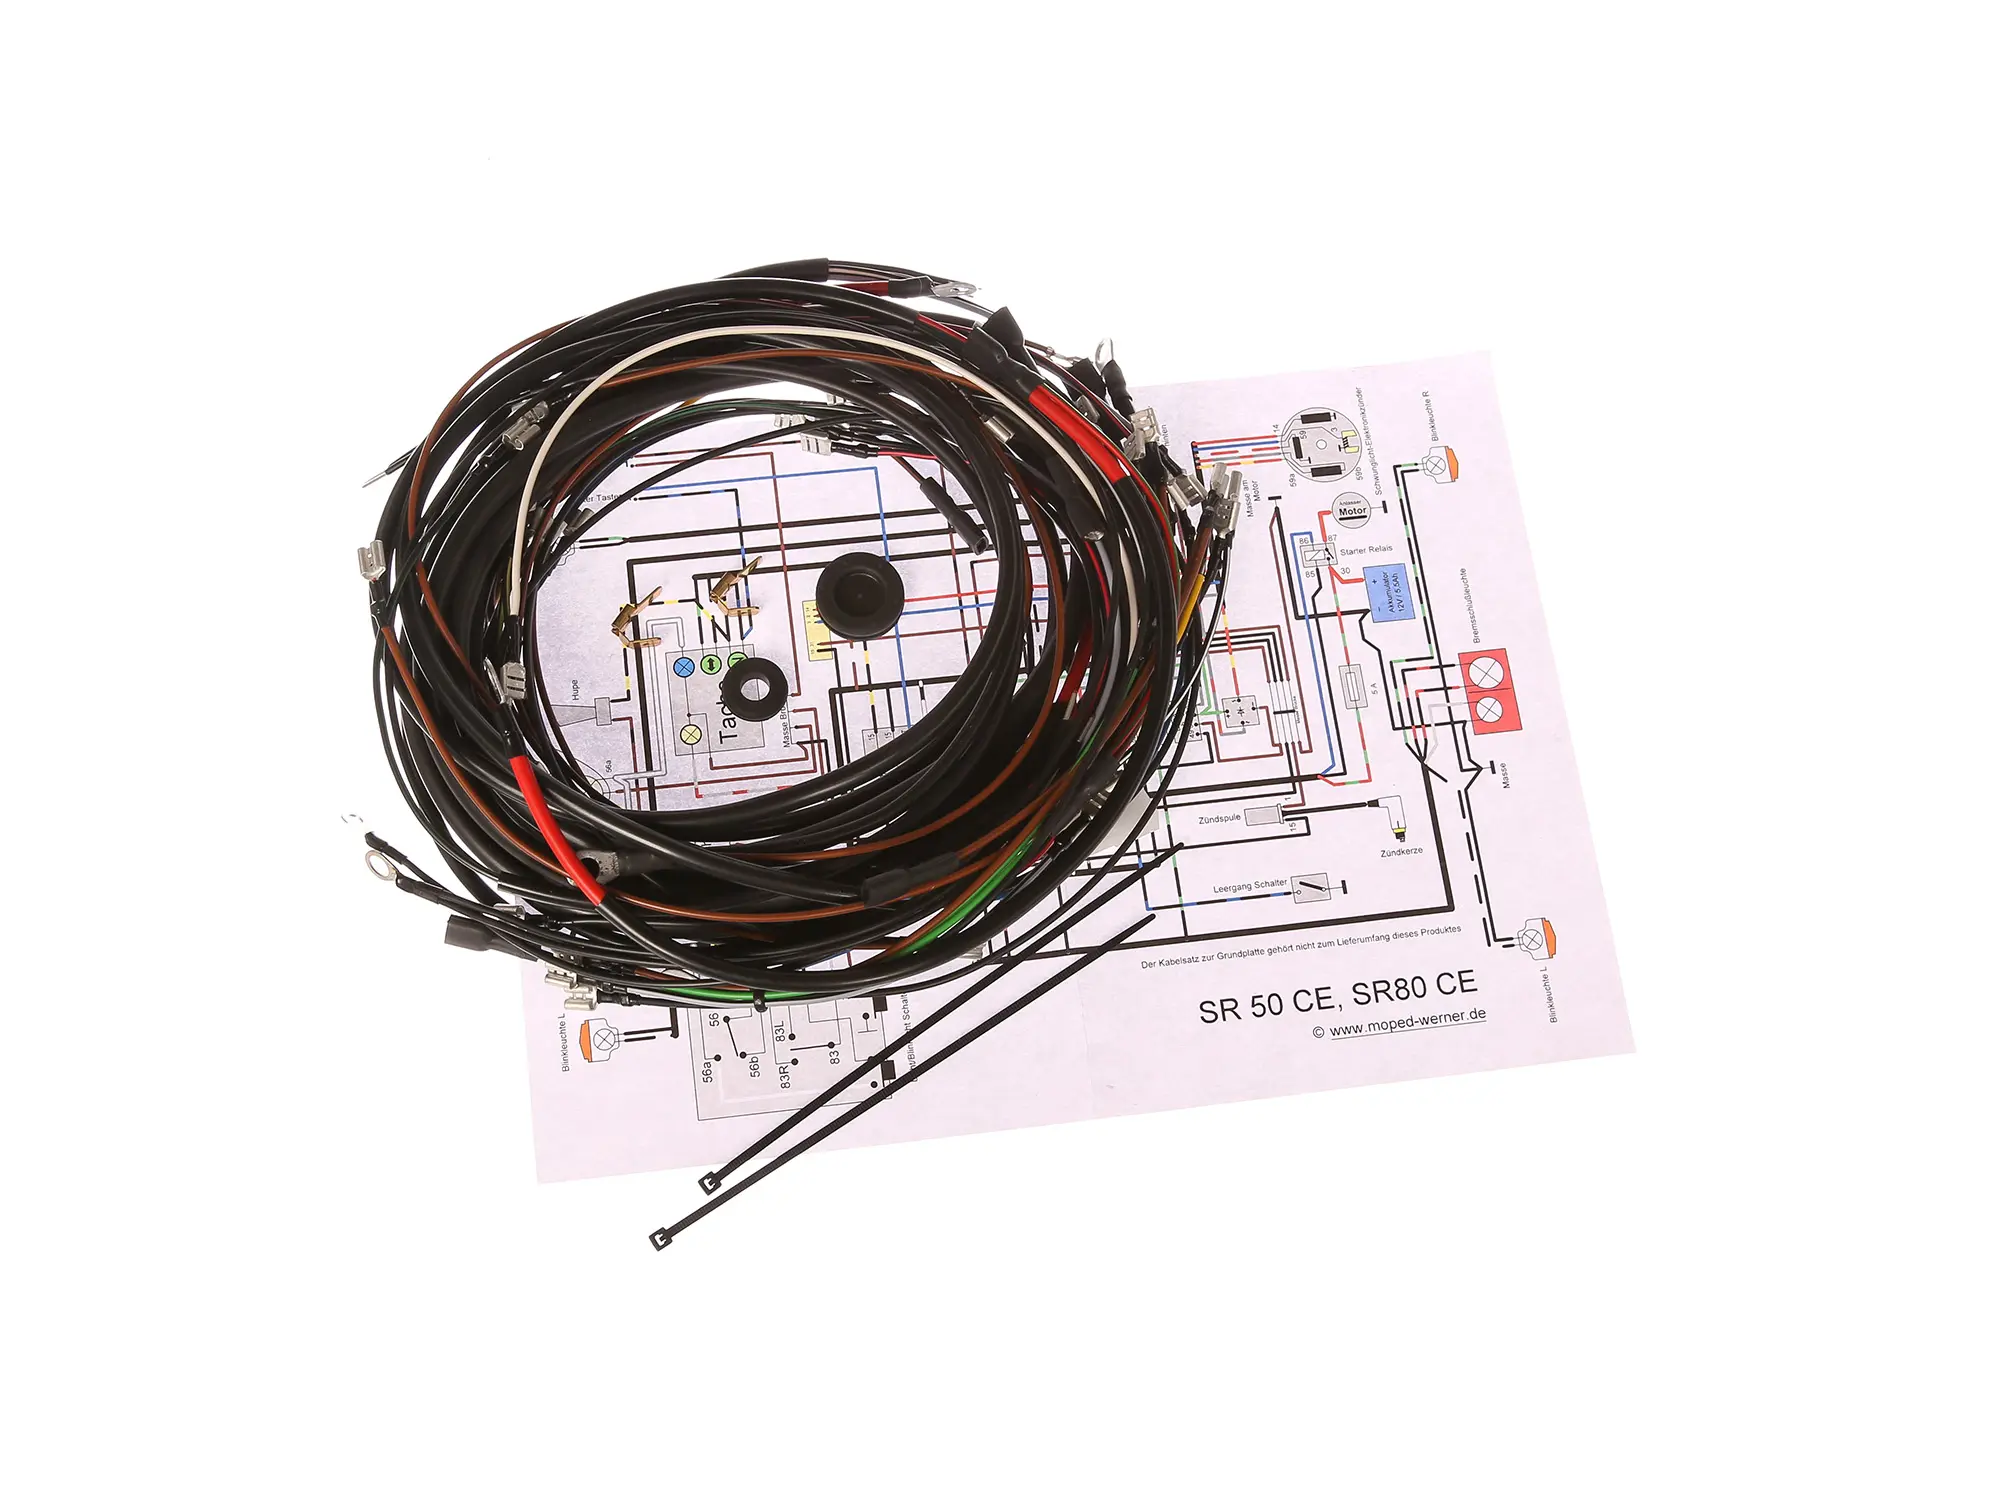 Kabelbaumset SR50CE, SR80CE, 12V-Elektronikzündung mit Schaltplan, Art.-Nr.: 10066450 - Bild 1